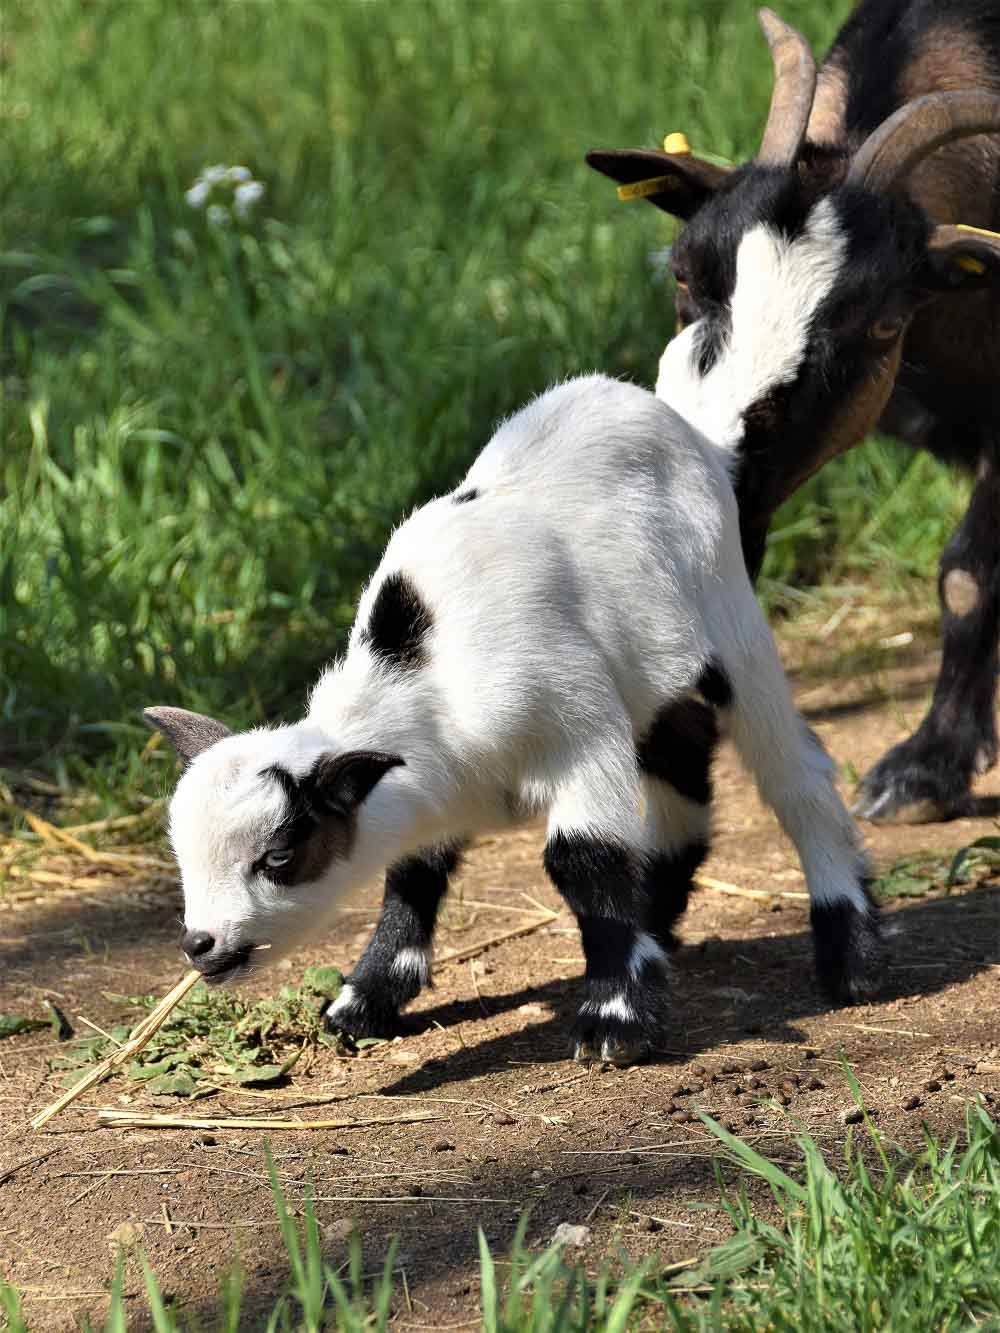 Dwarf goats enclosure